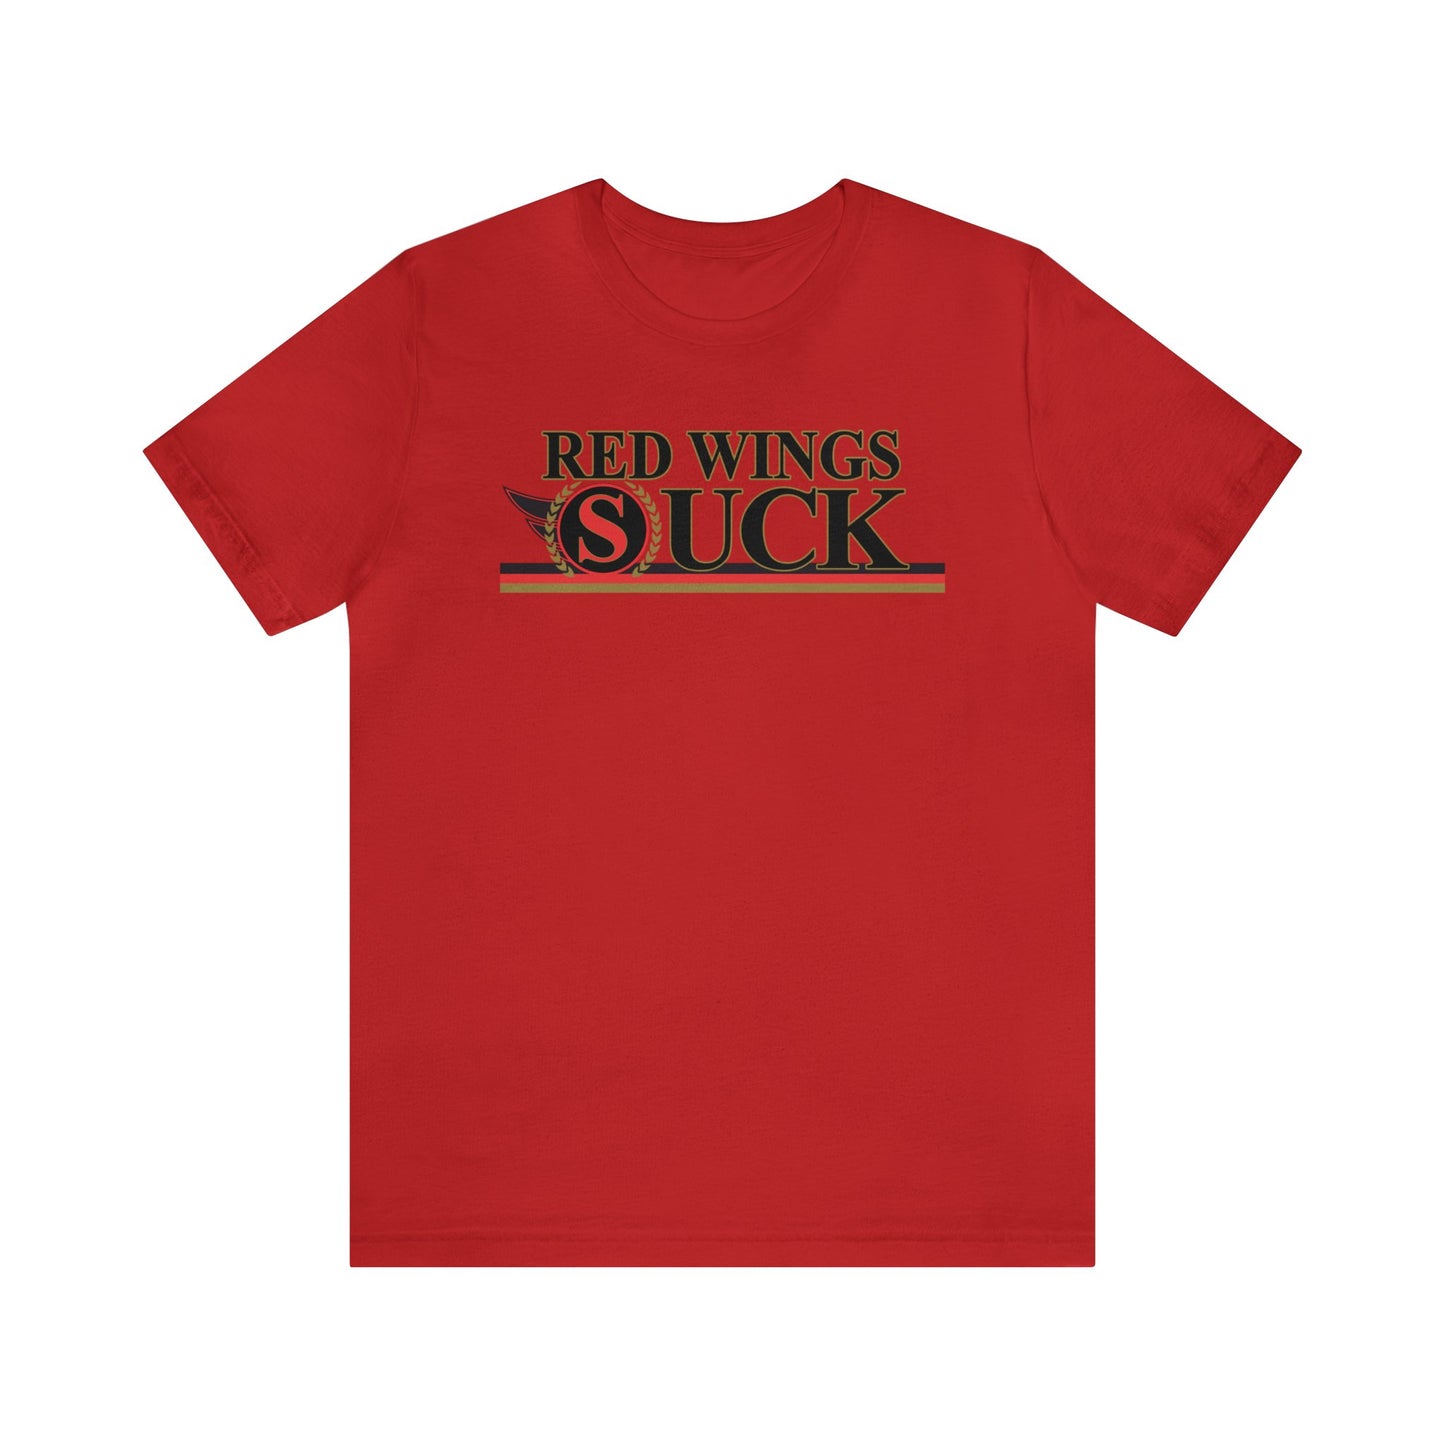 Rojo Wings Suck (for Ottawa fans) - Unisex Jersey Short Sleeve Tee